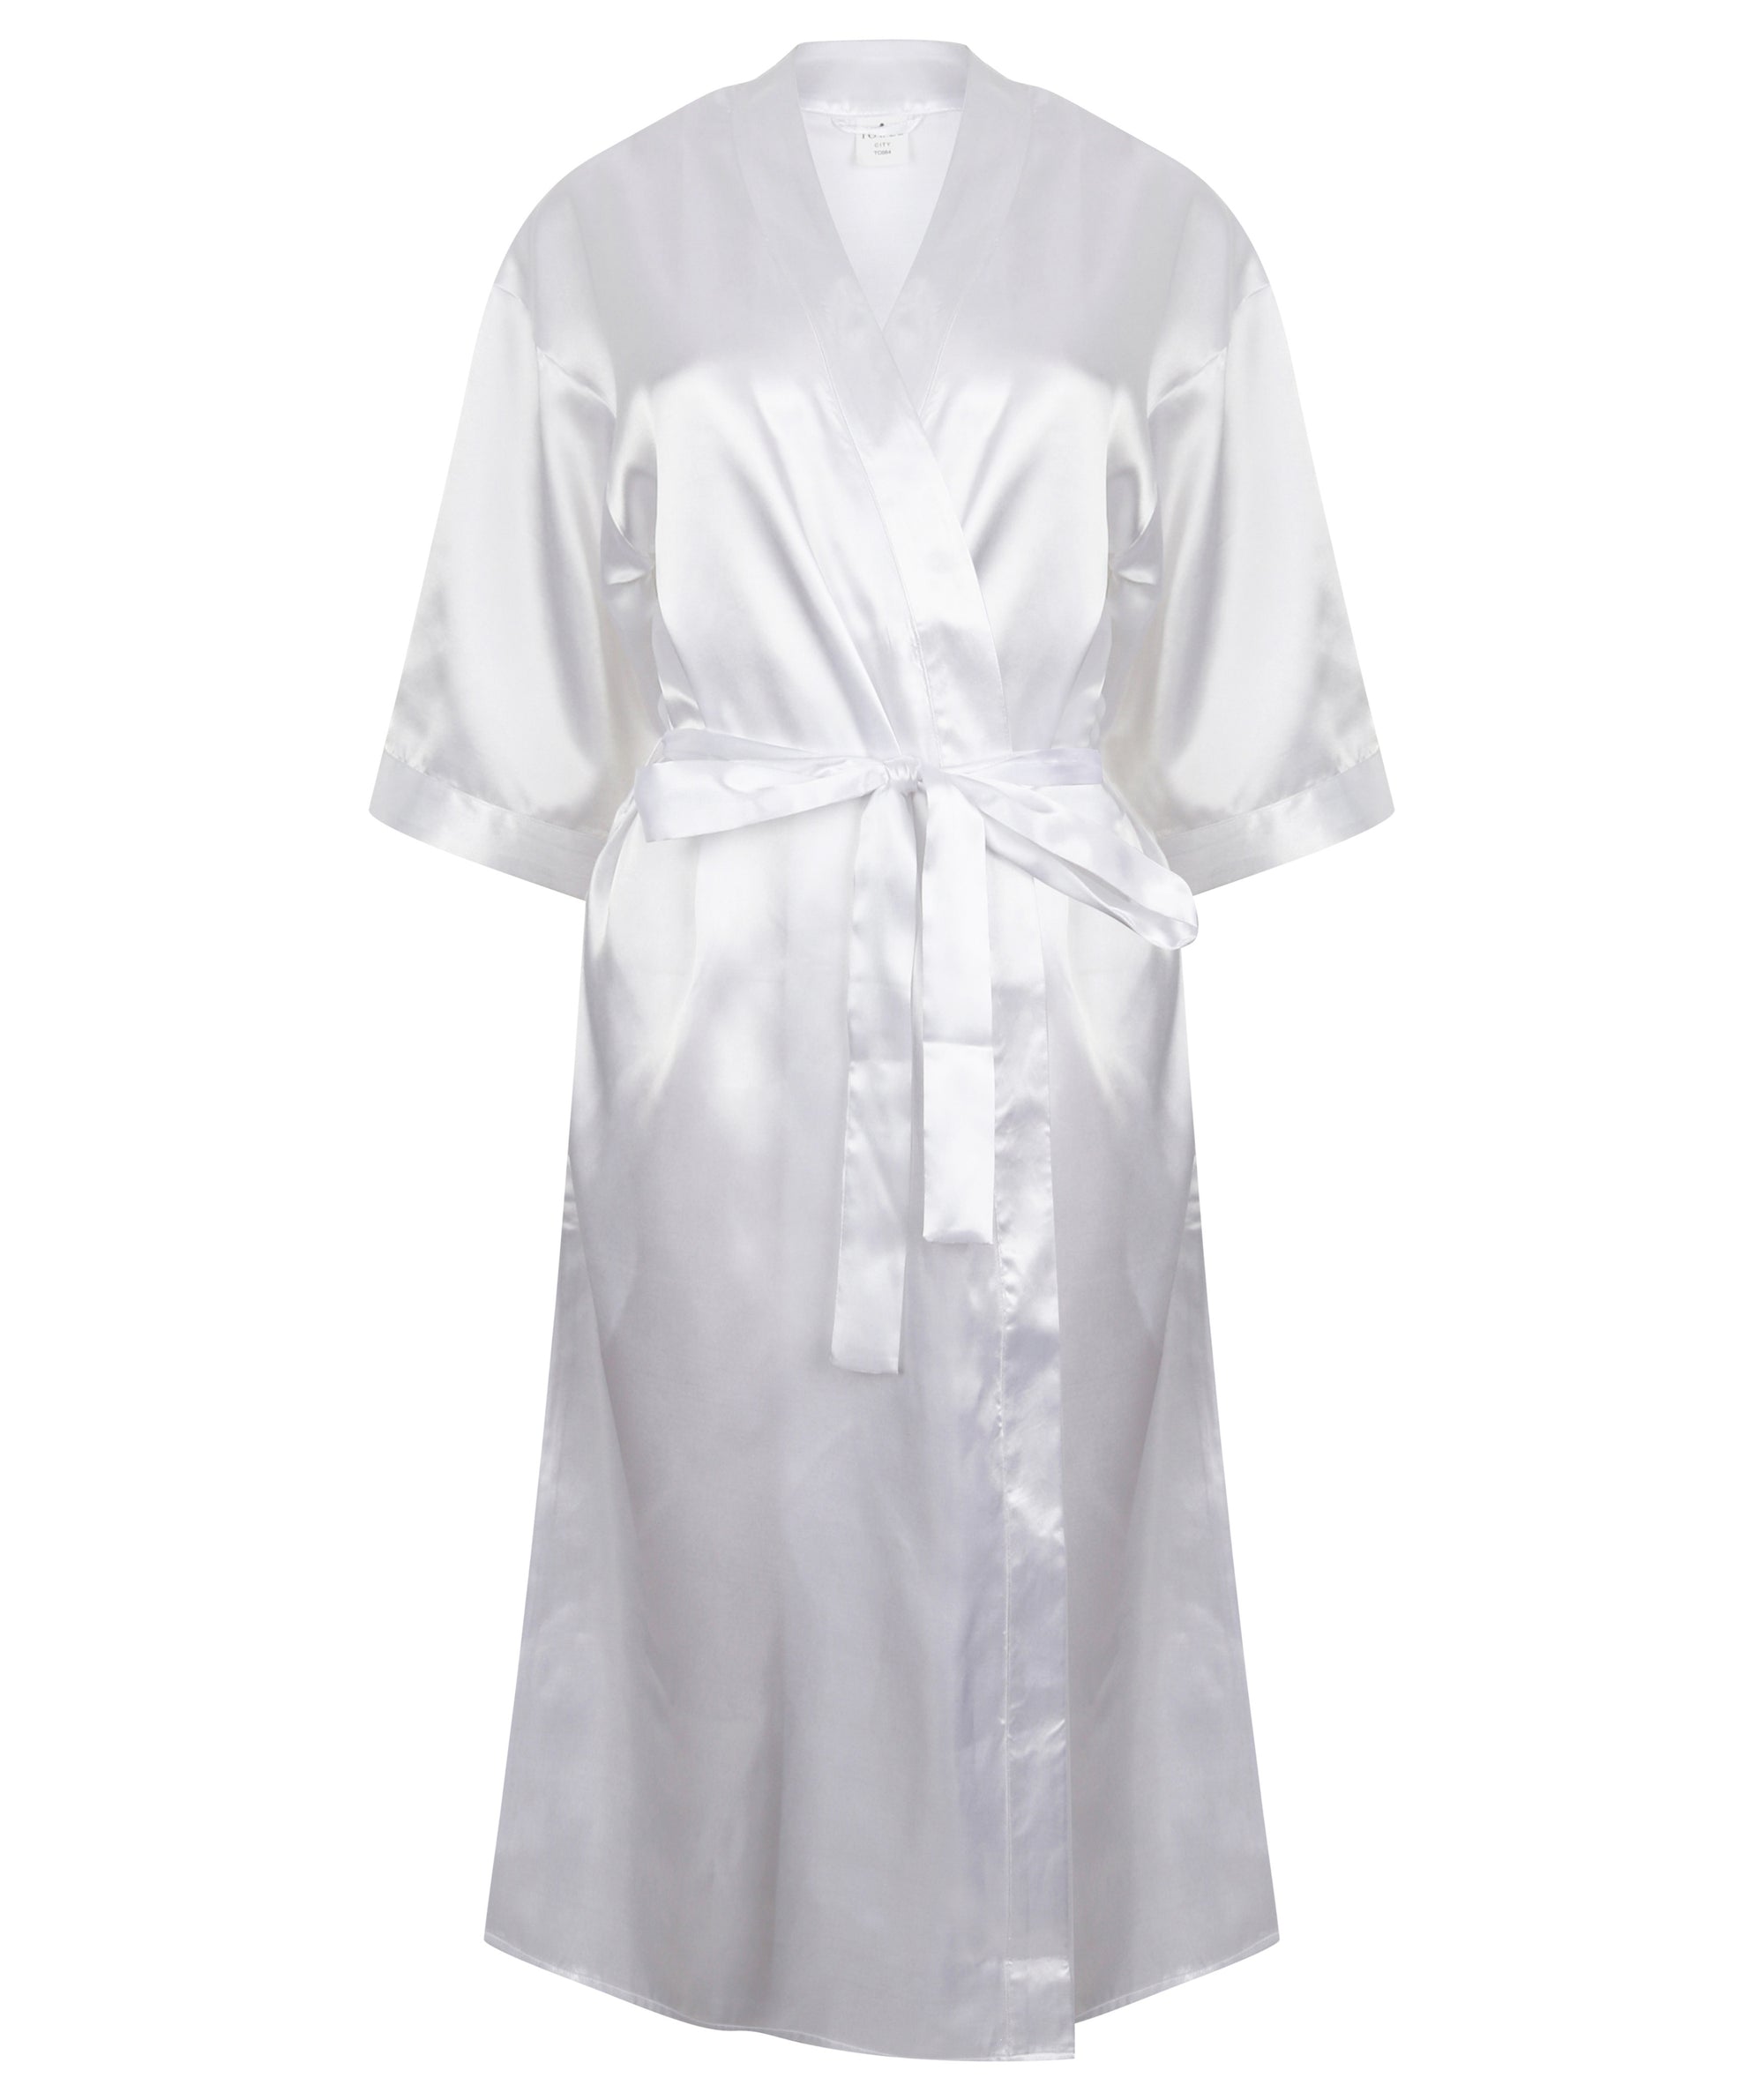 Womens Satin Kimono Robe - Personalise It